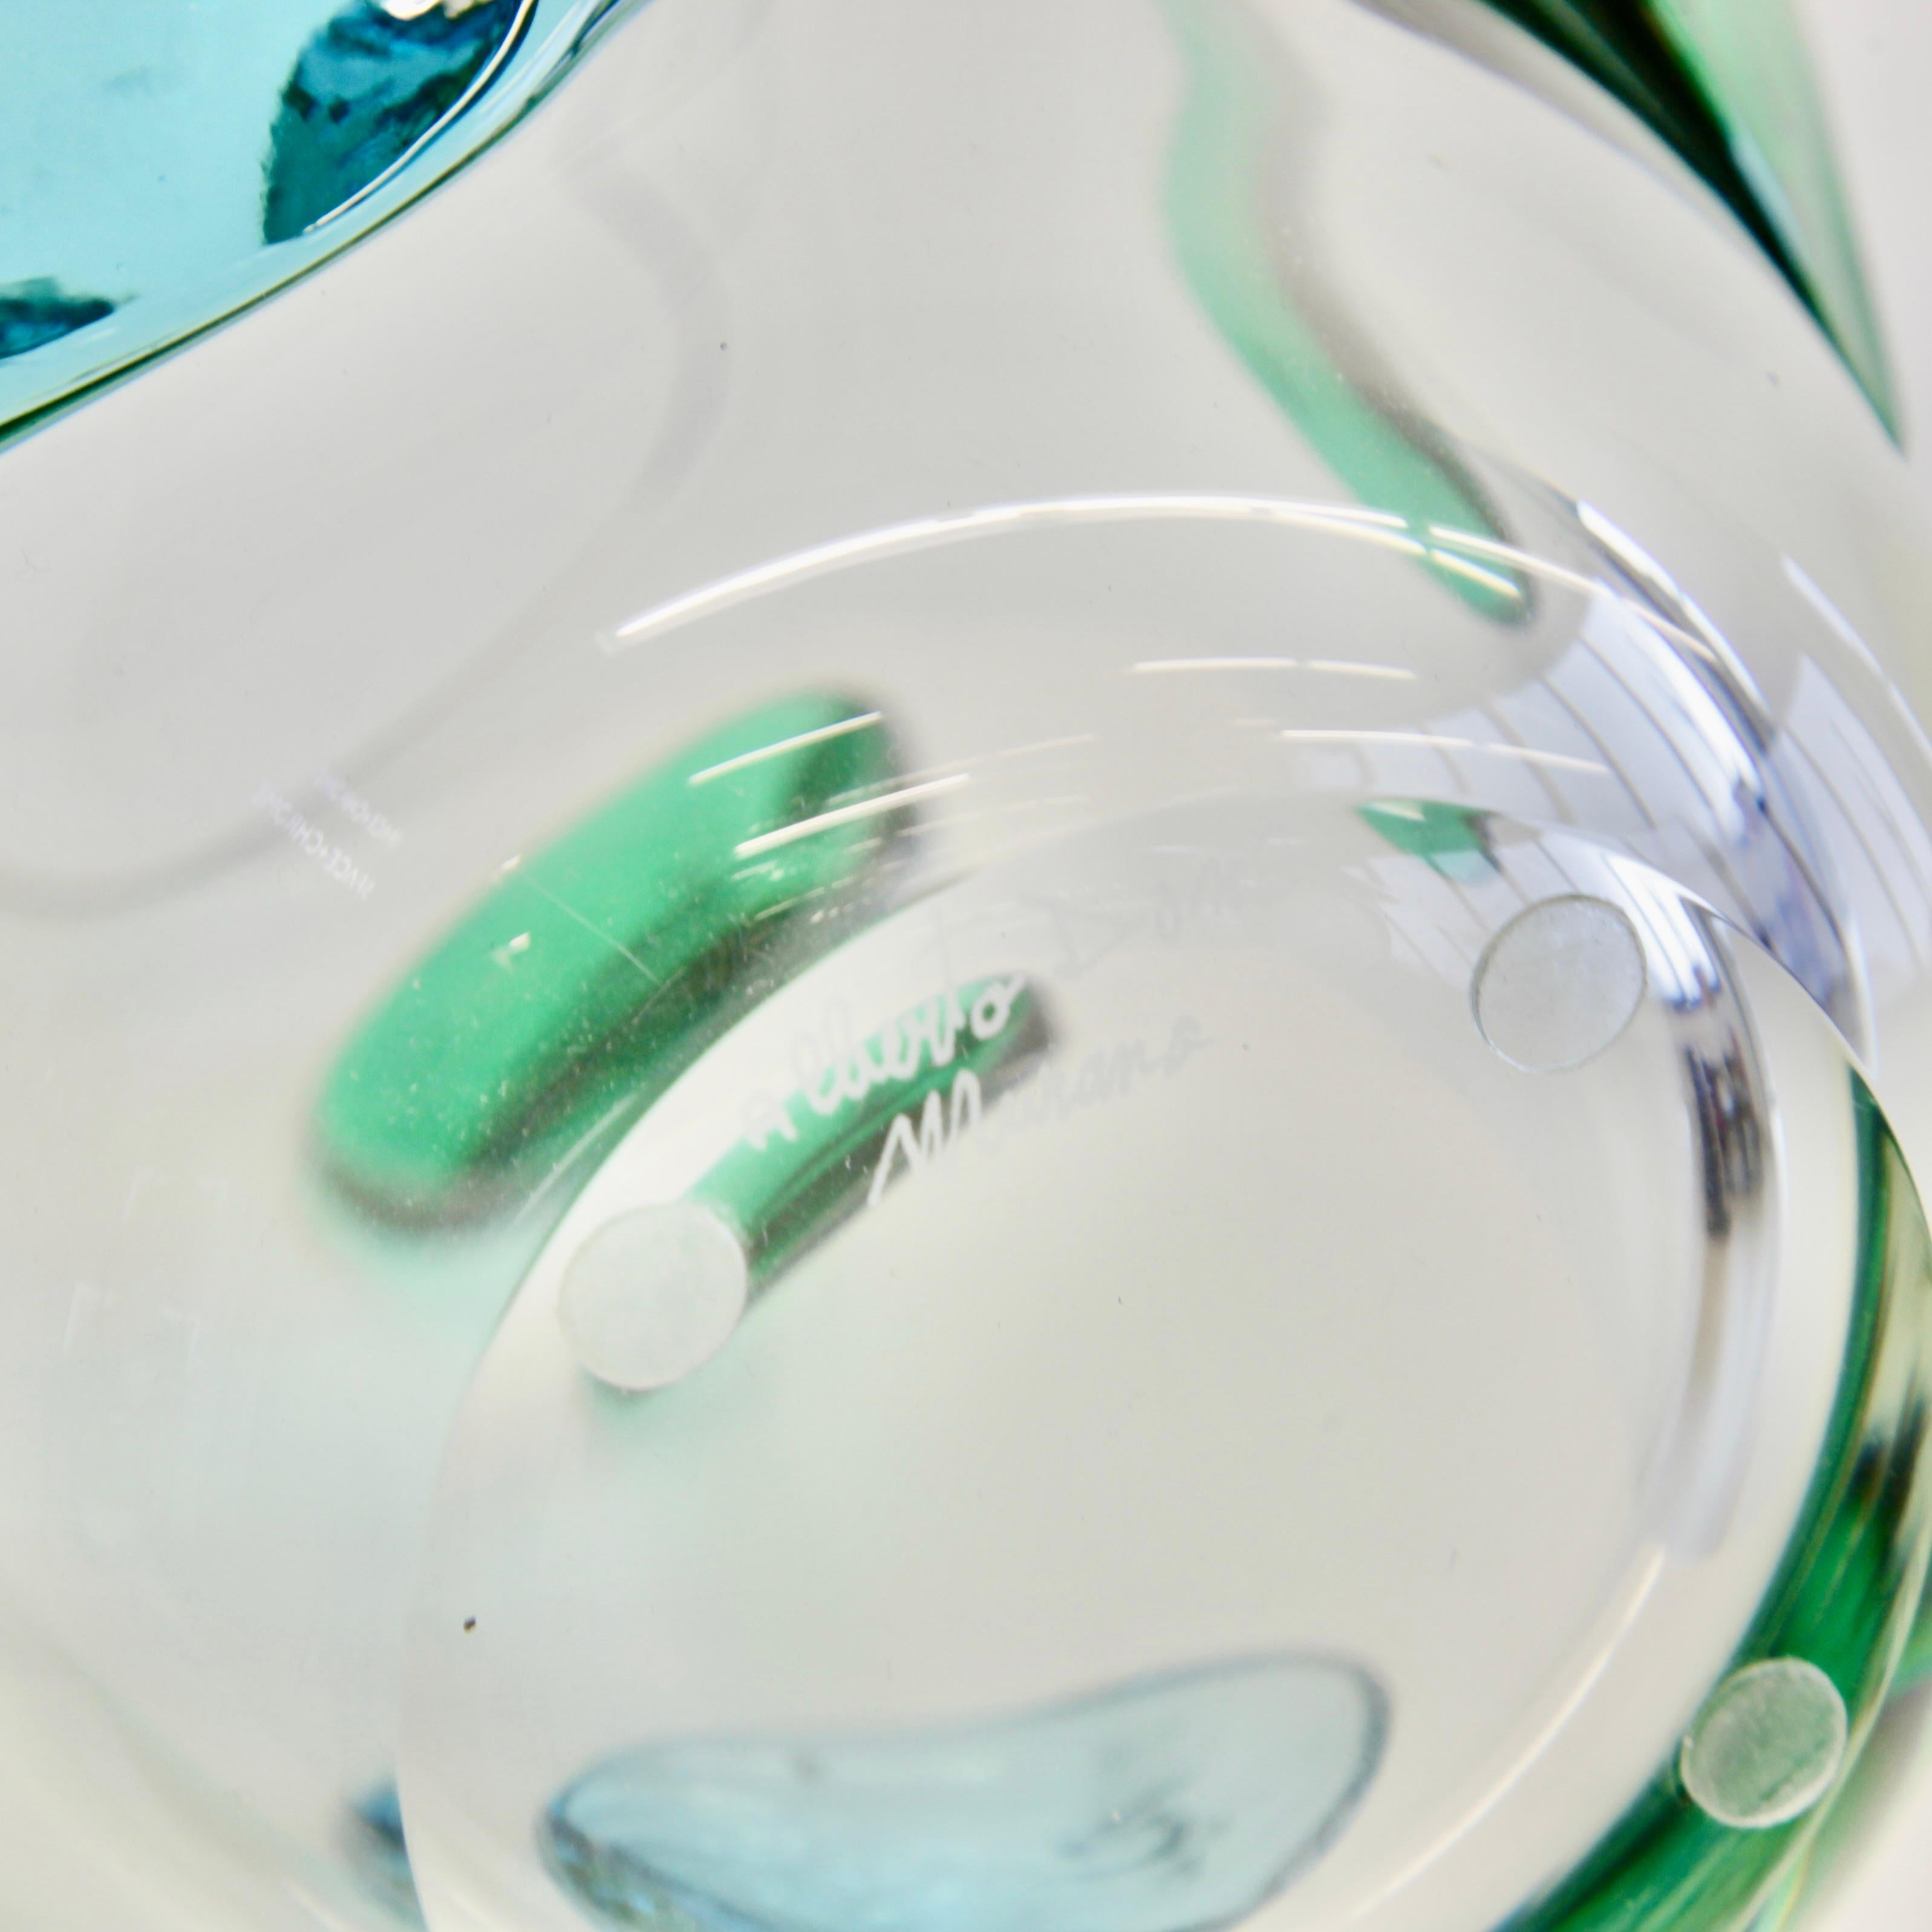 Große Vase aus mundgeblasenem Glas, Italien, Murano.

Vase aus mundgeblasenem Murano-Glas mit Glasornamenten in Grün und Blaugrün, graviert mit Signatur auf dem Sockel. Dekoratives Stück, hergestellt auf der Insel Murano.